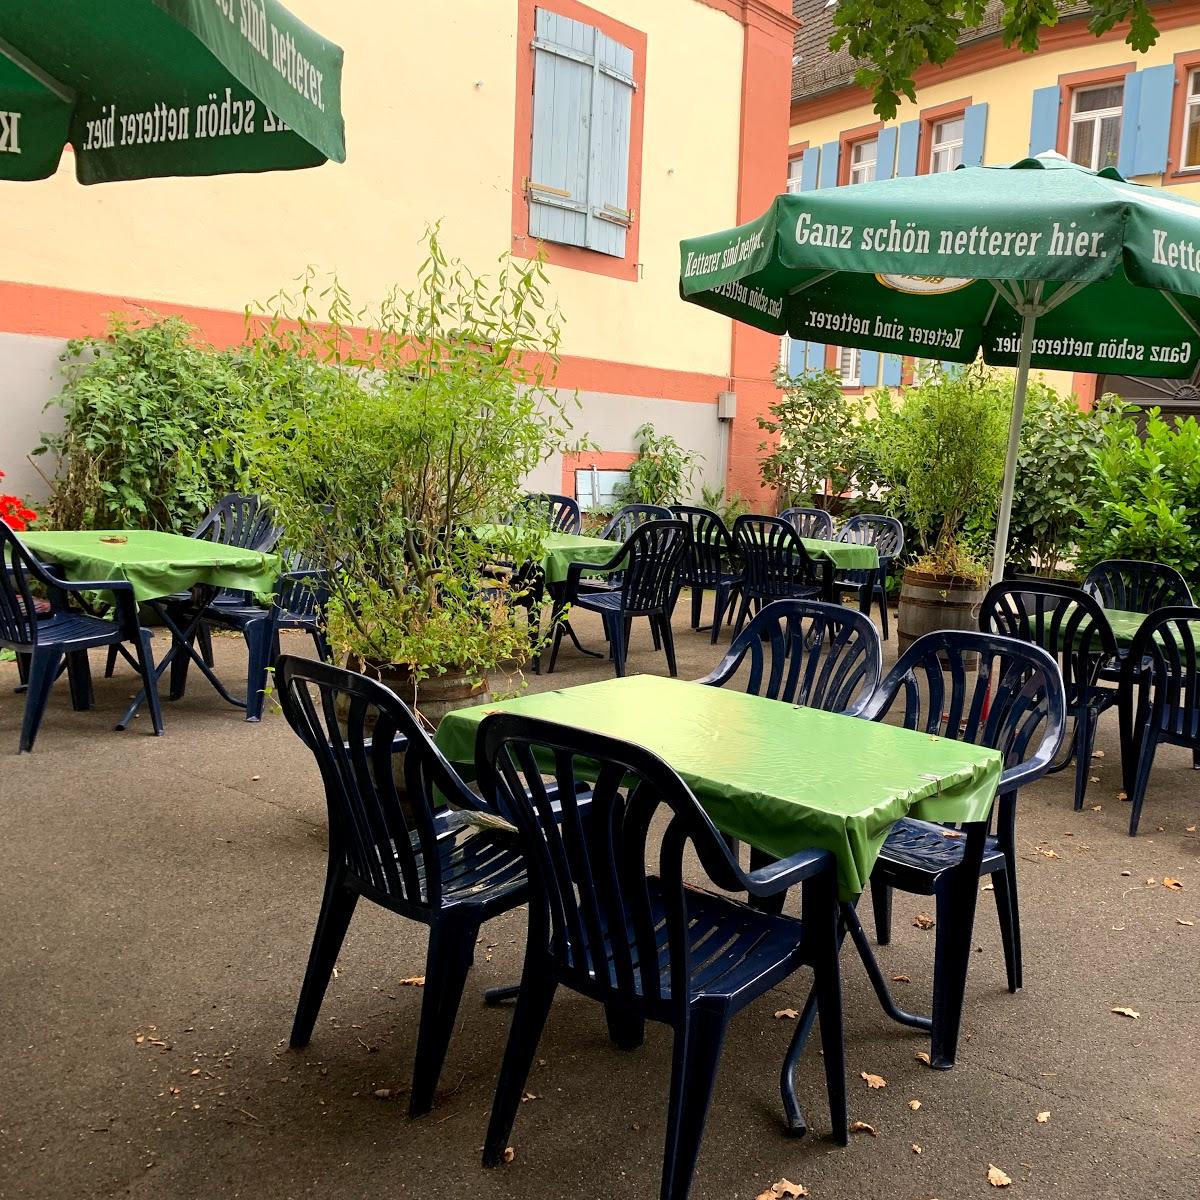 Restaurant "Gasthaus zum Adler" in Friesenheim